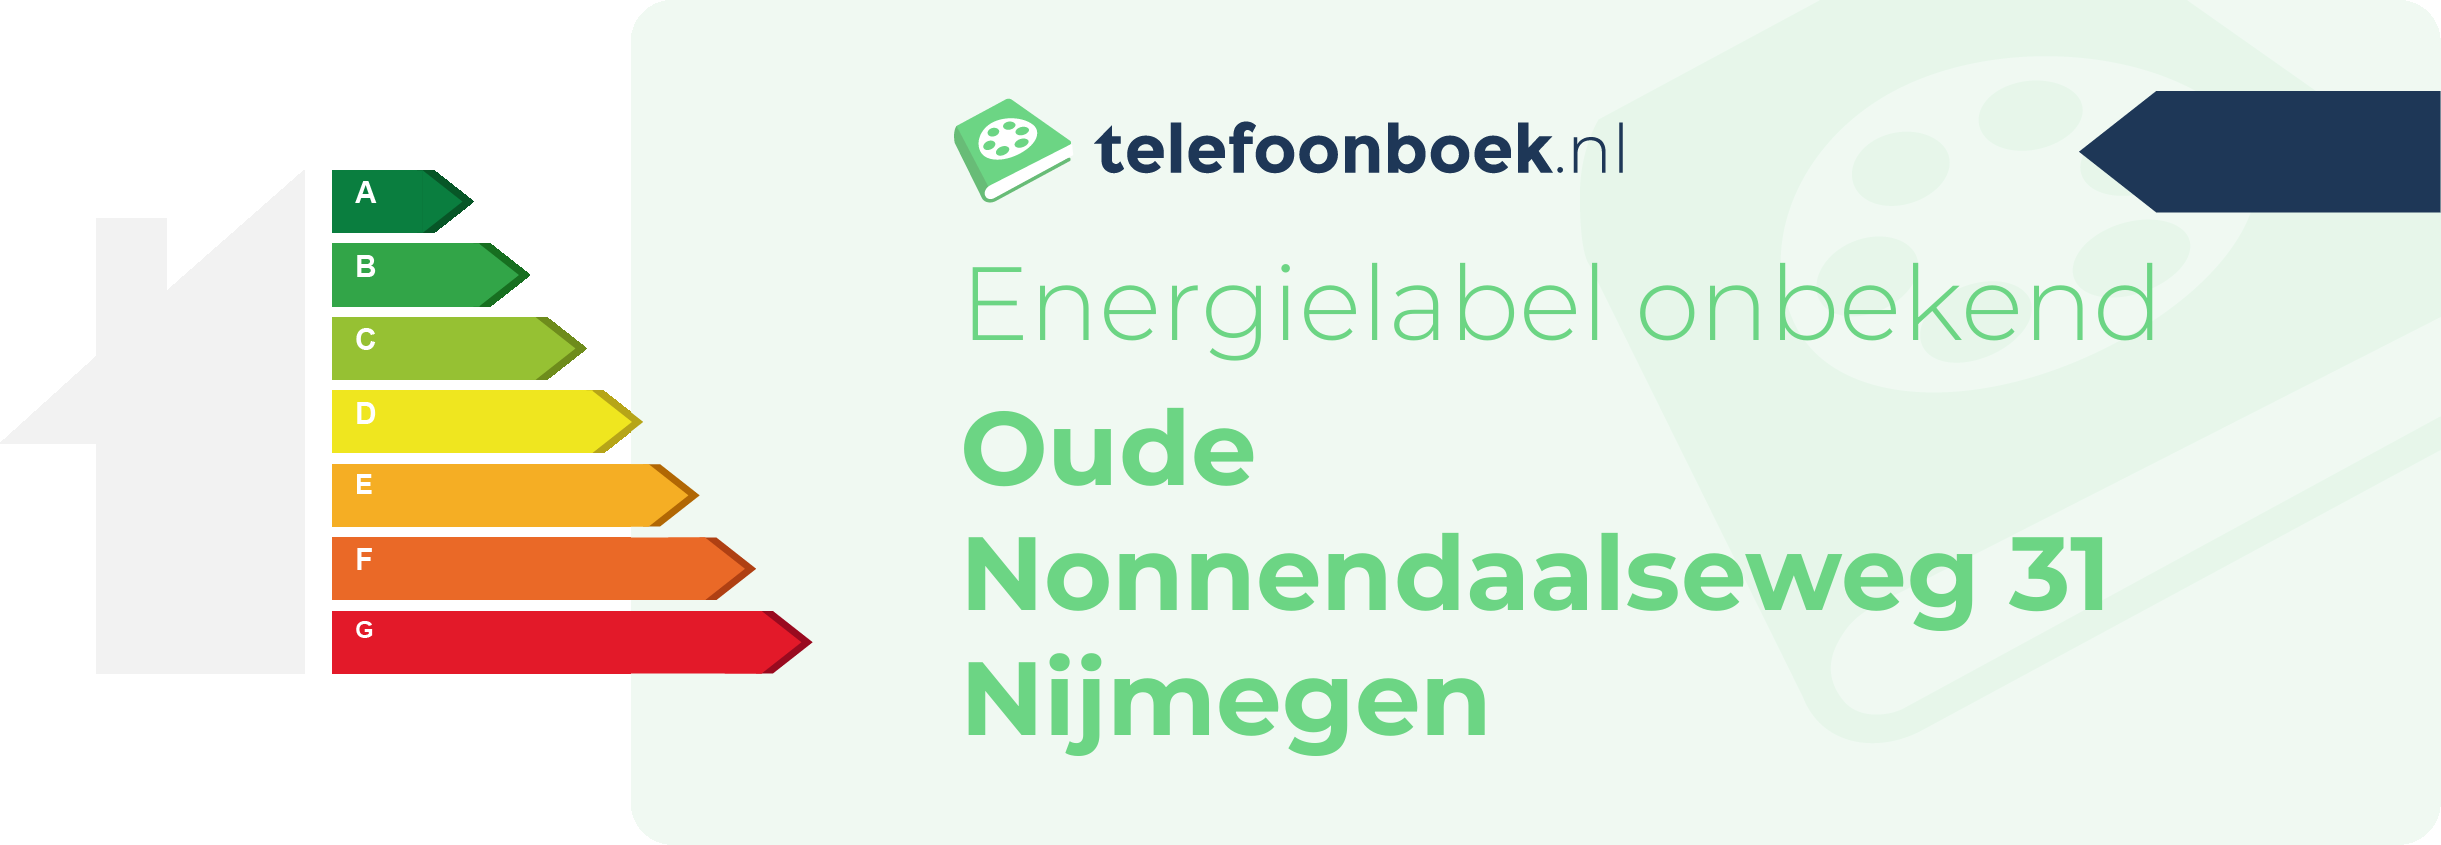 Energielabel Oude Nonnendaalseweg 31 Nijmegen